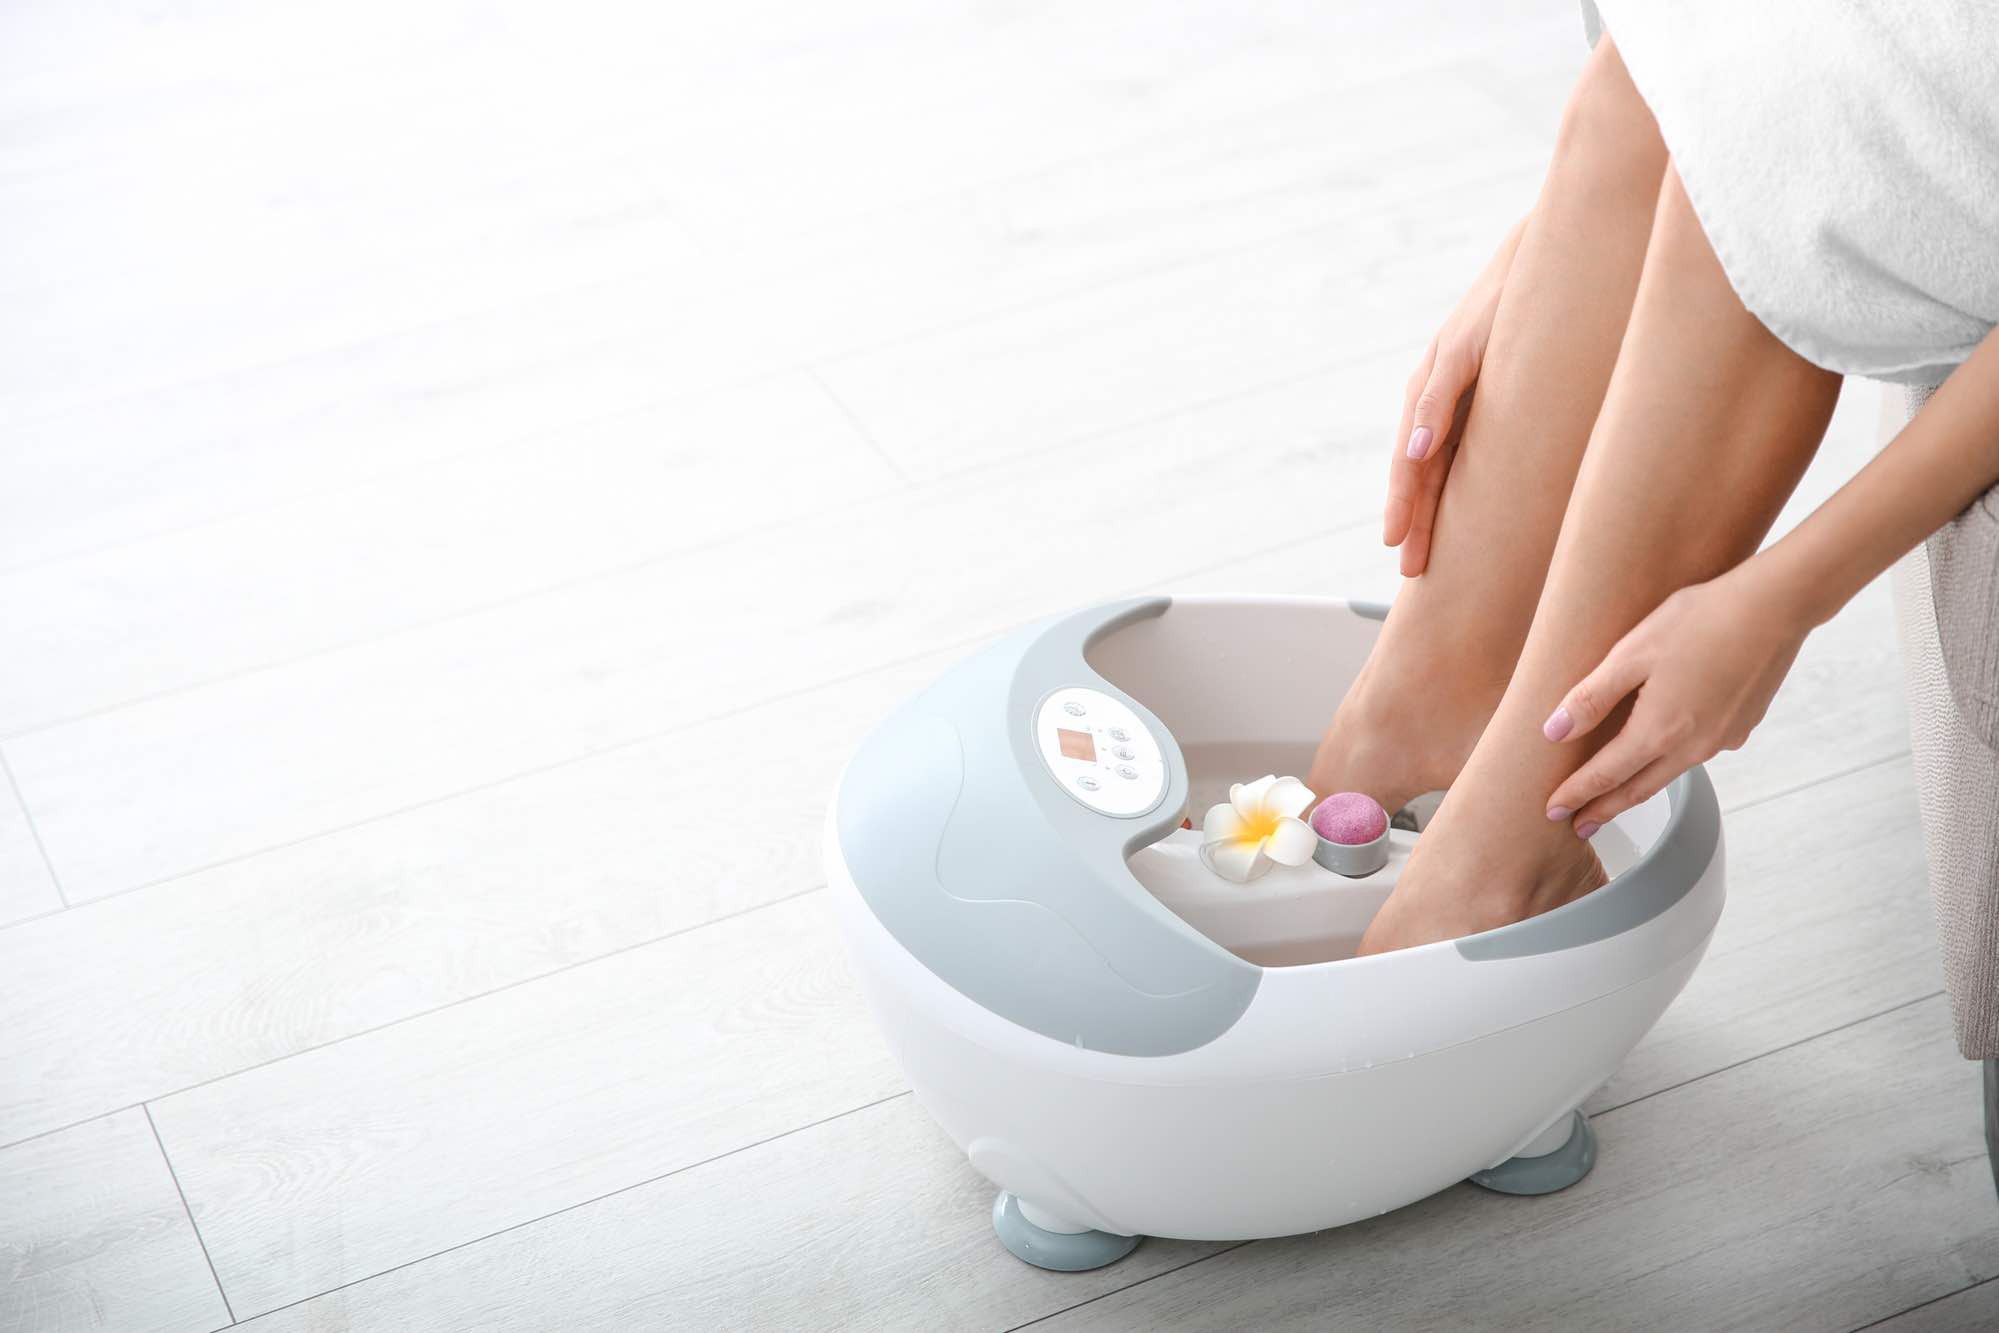 Automatisch Permanent verwerken Zelf je voeten verzorgen en ontspannen? Neem een voetenbad!